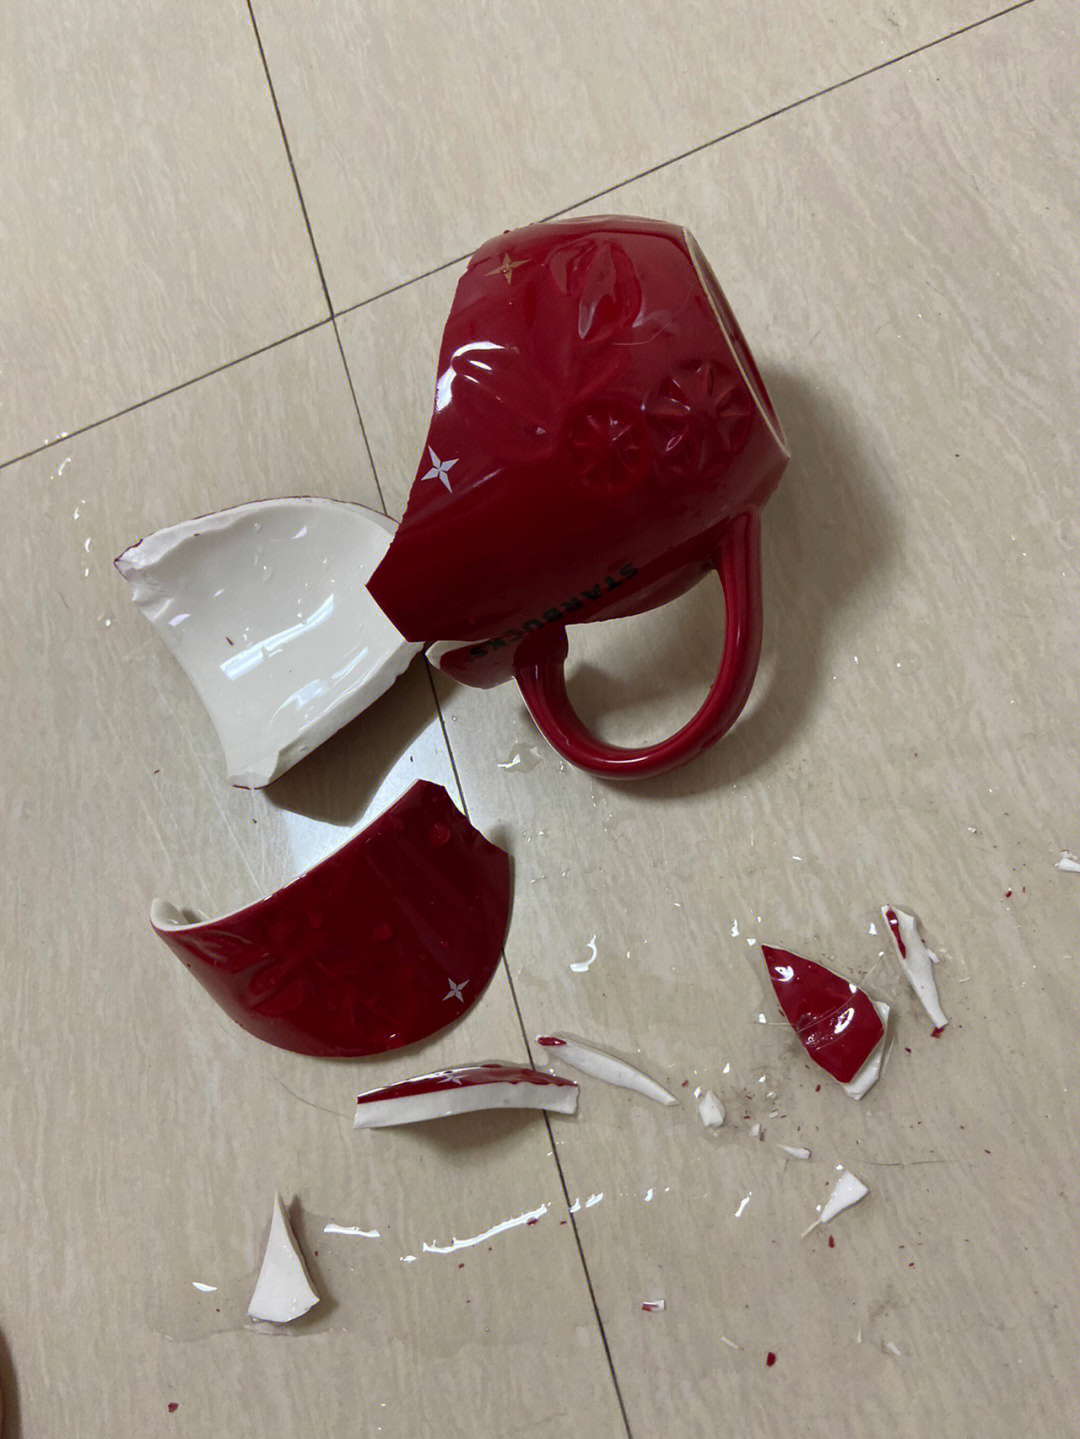 2013年产的星巴克杯子碎了